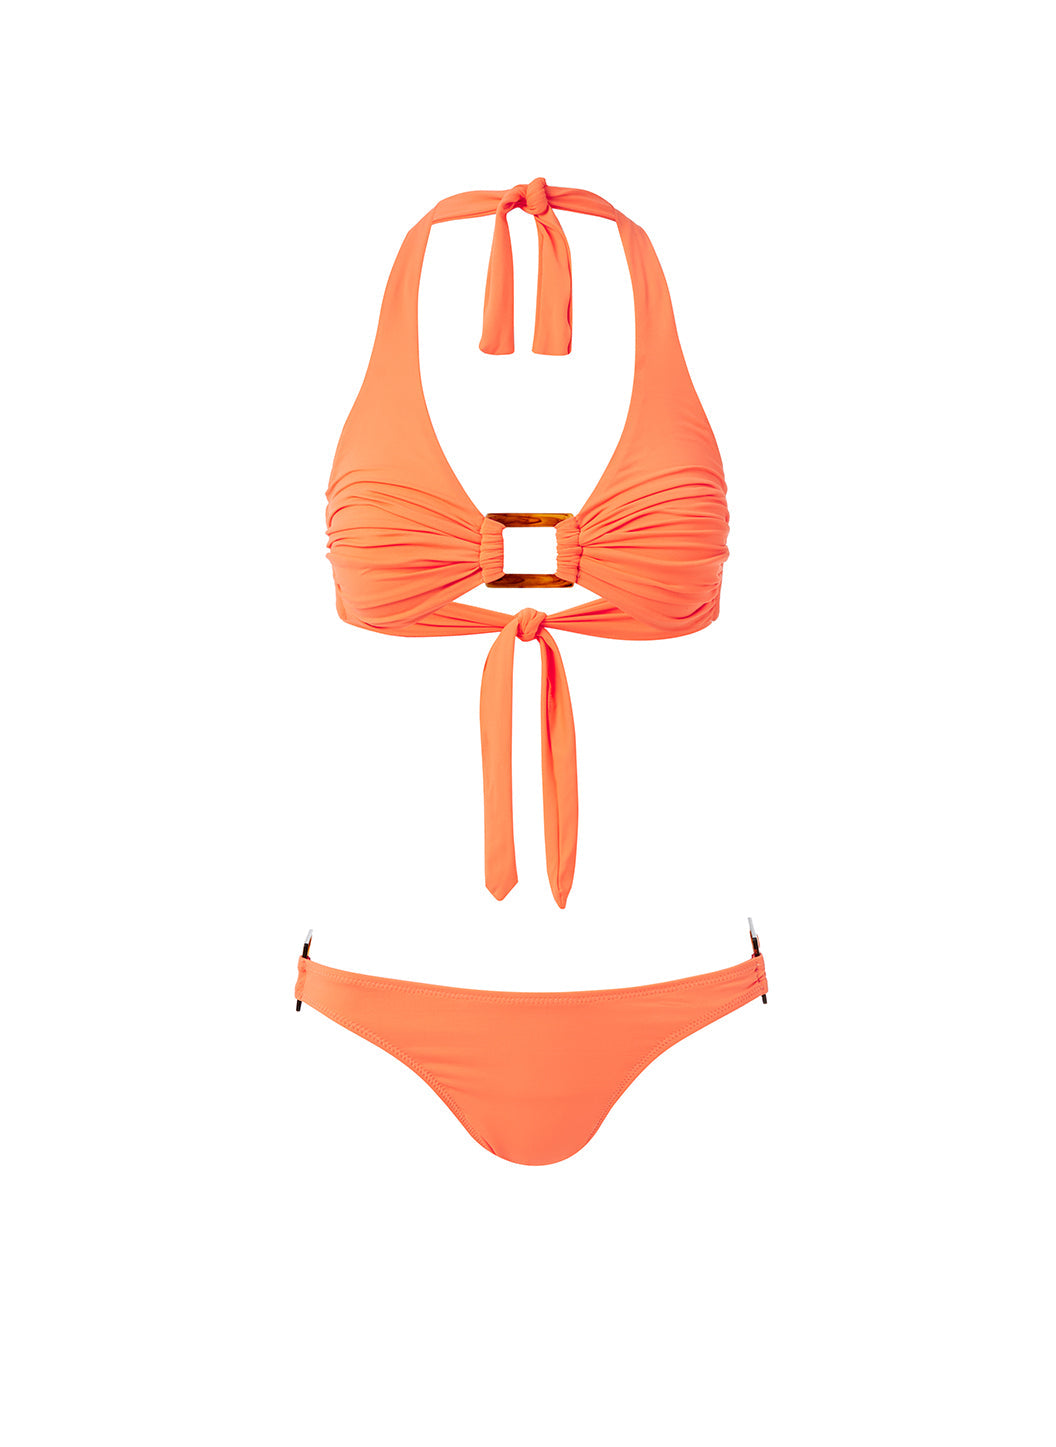 paris-orange-bikini_cutout